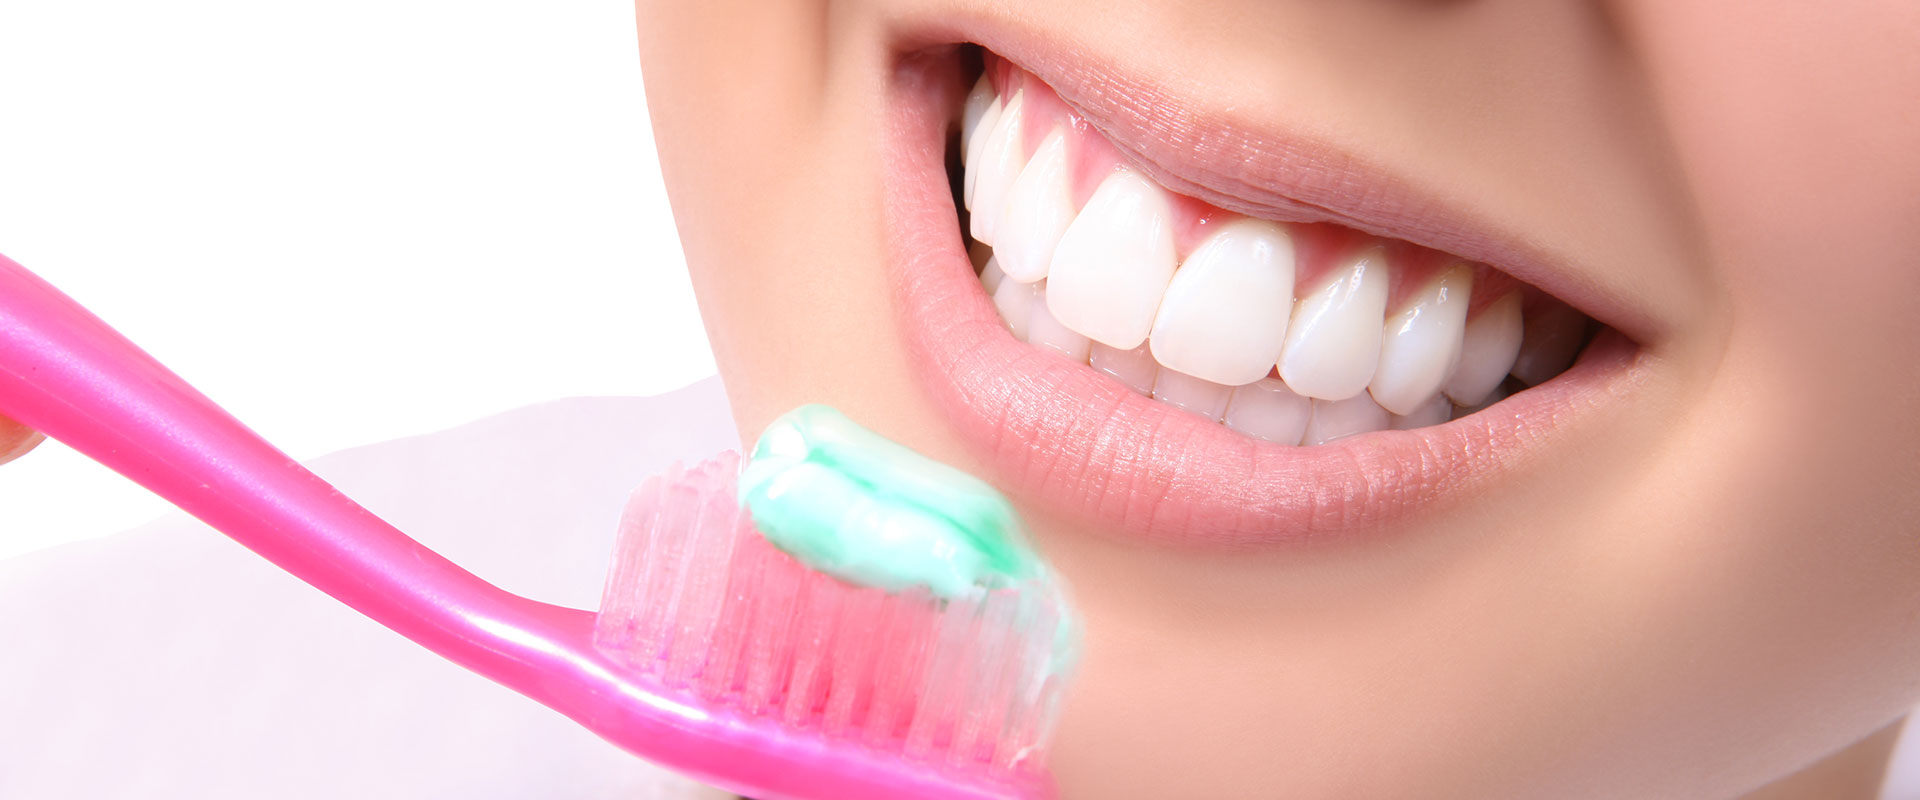 Îngrijirea dinților și gingiilor seara